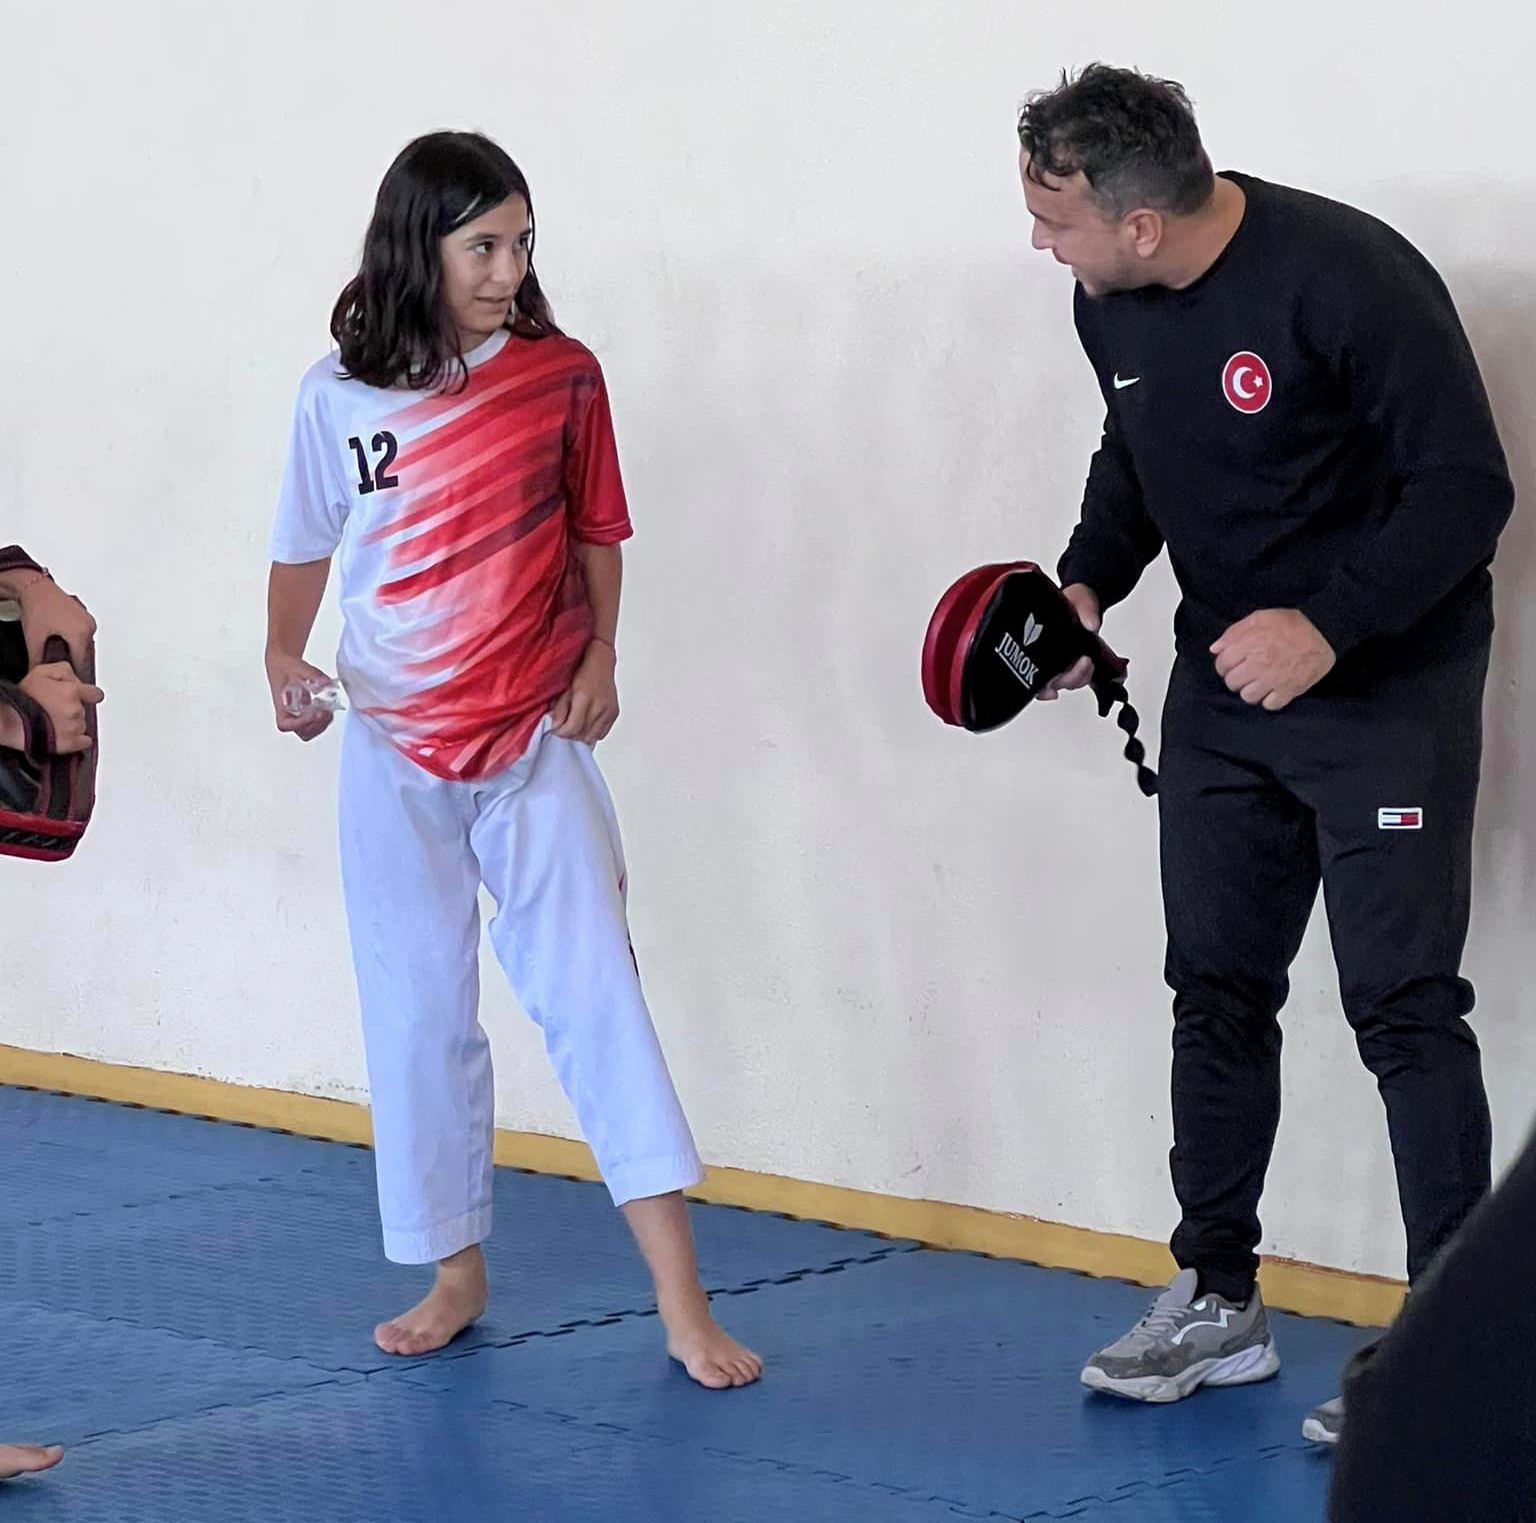 yalova-altınova-belediyespor-taekwondo-milli-takım-hedef-spor (6)